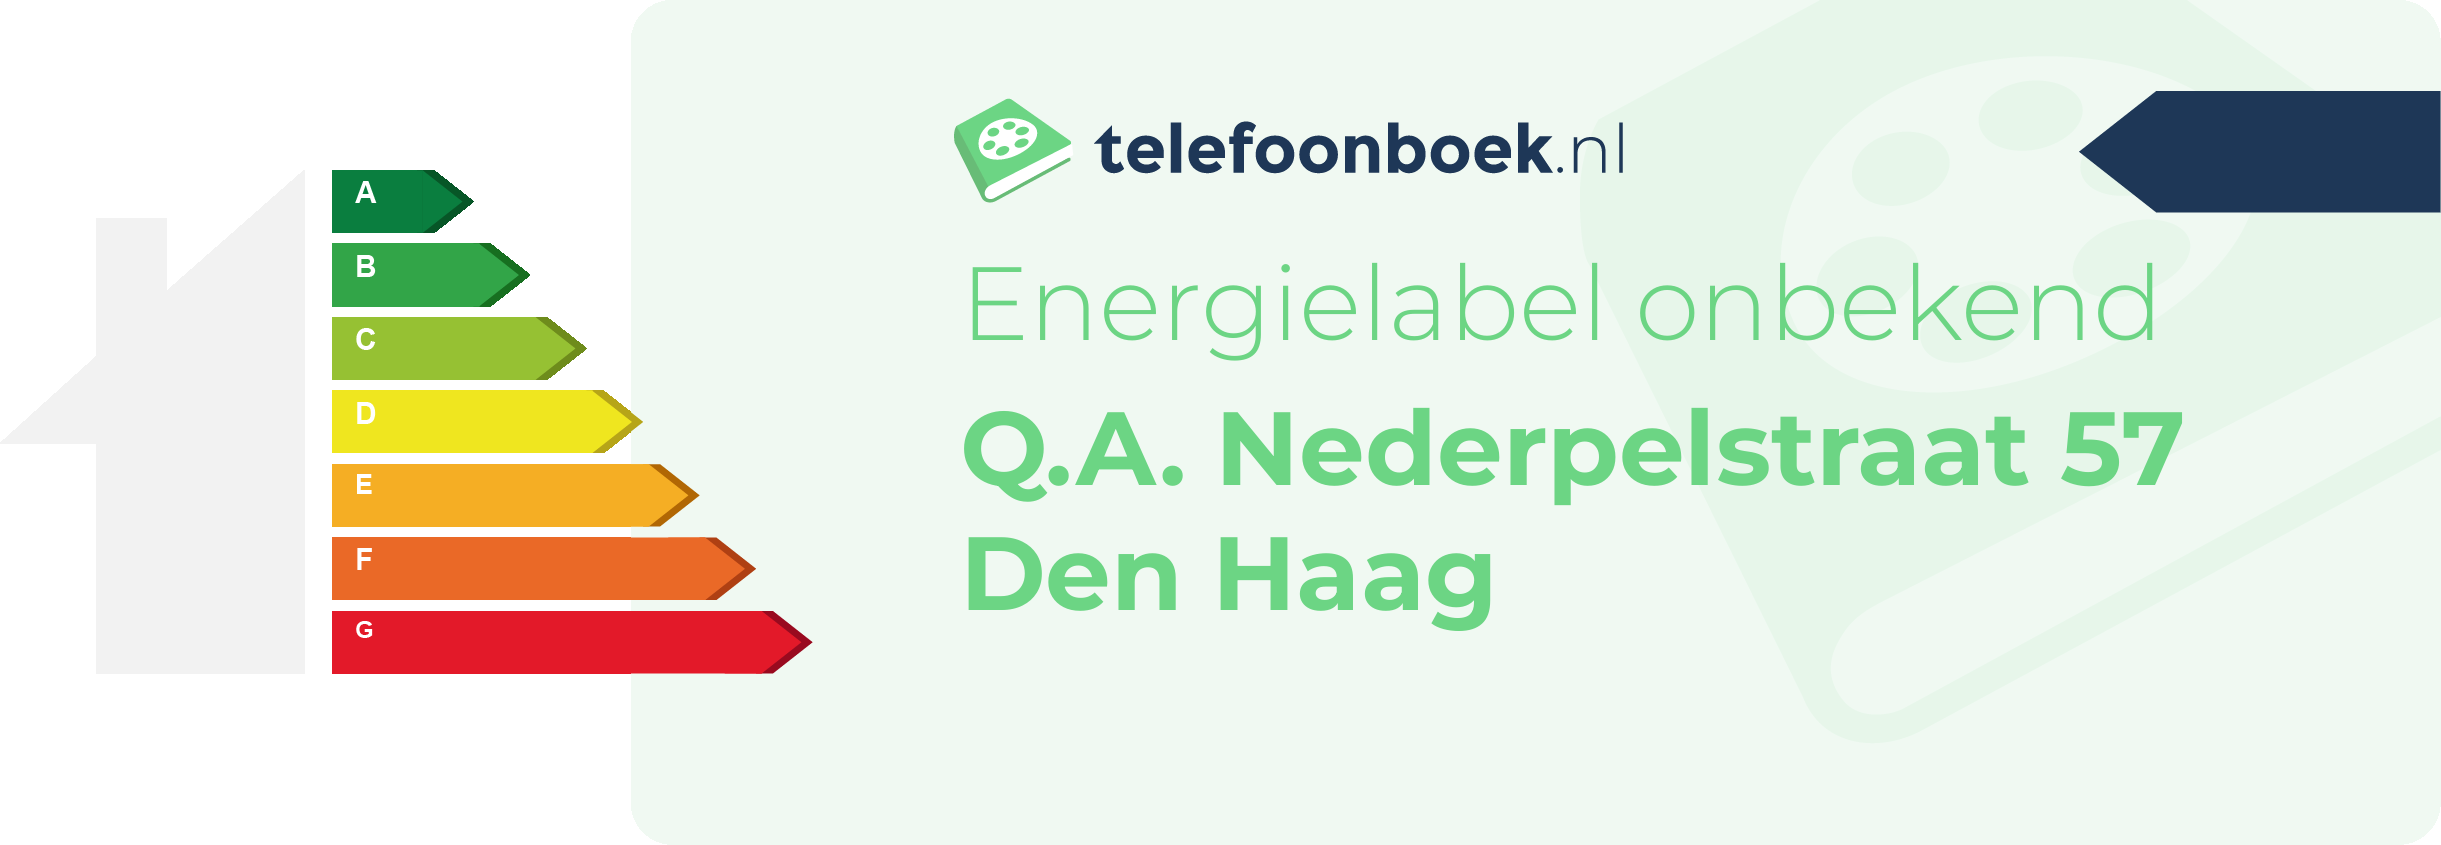 Energielabel Q.A. Nederpelstraat 57 Den Haag